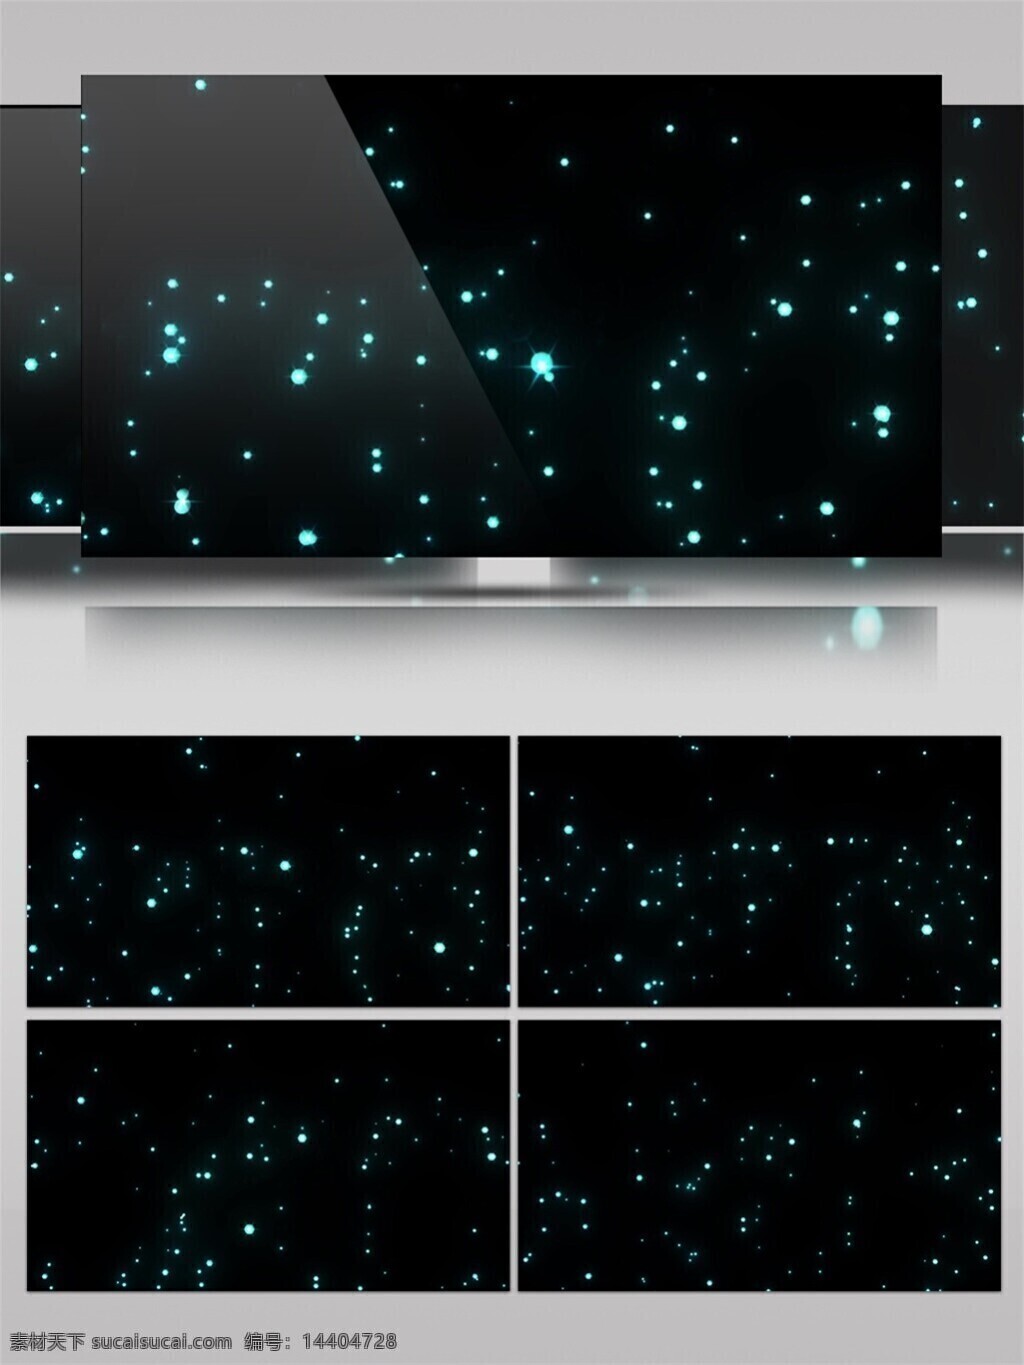 光斑散射 光束 激光 蓝色 视觉享受 手机壁纸 星际 光斑 宇宙 视频